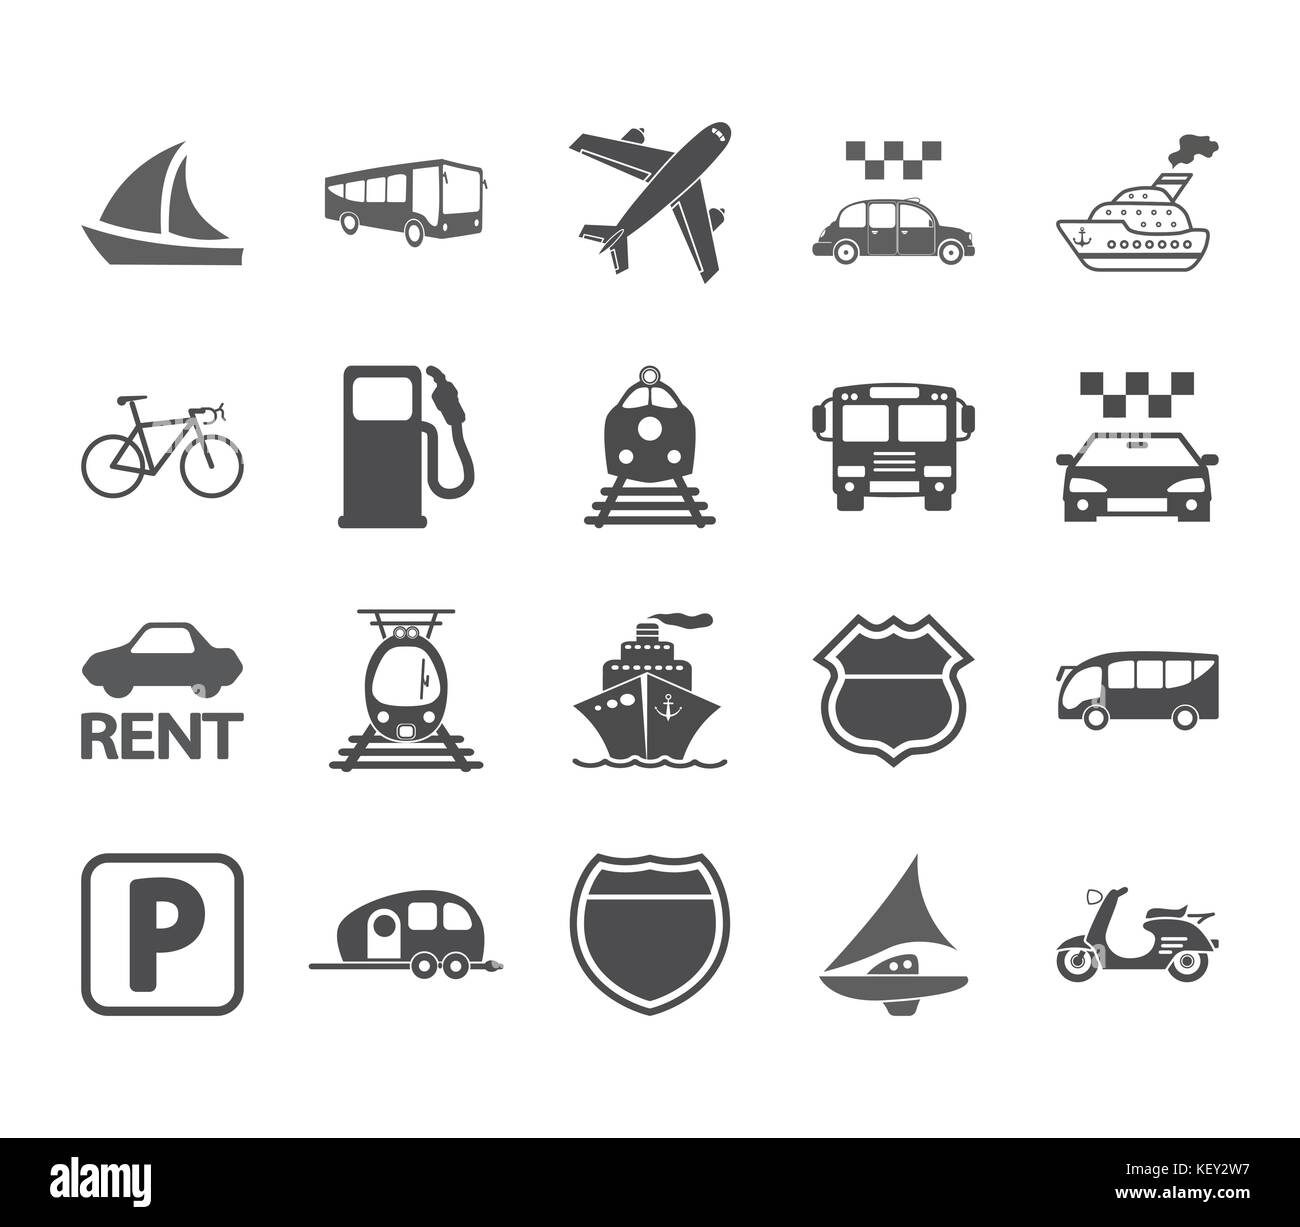 Transportation icon set. Vector illustration. Stock Vector